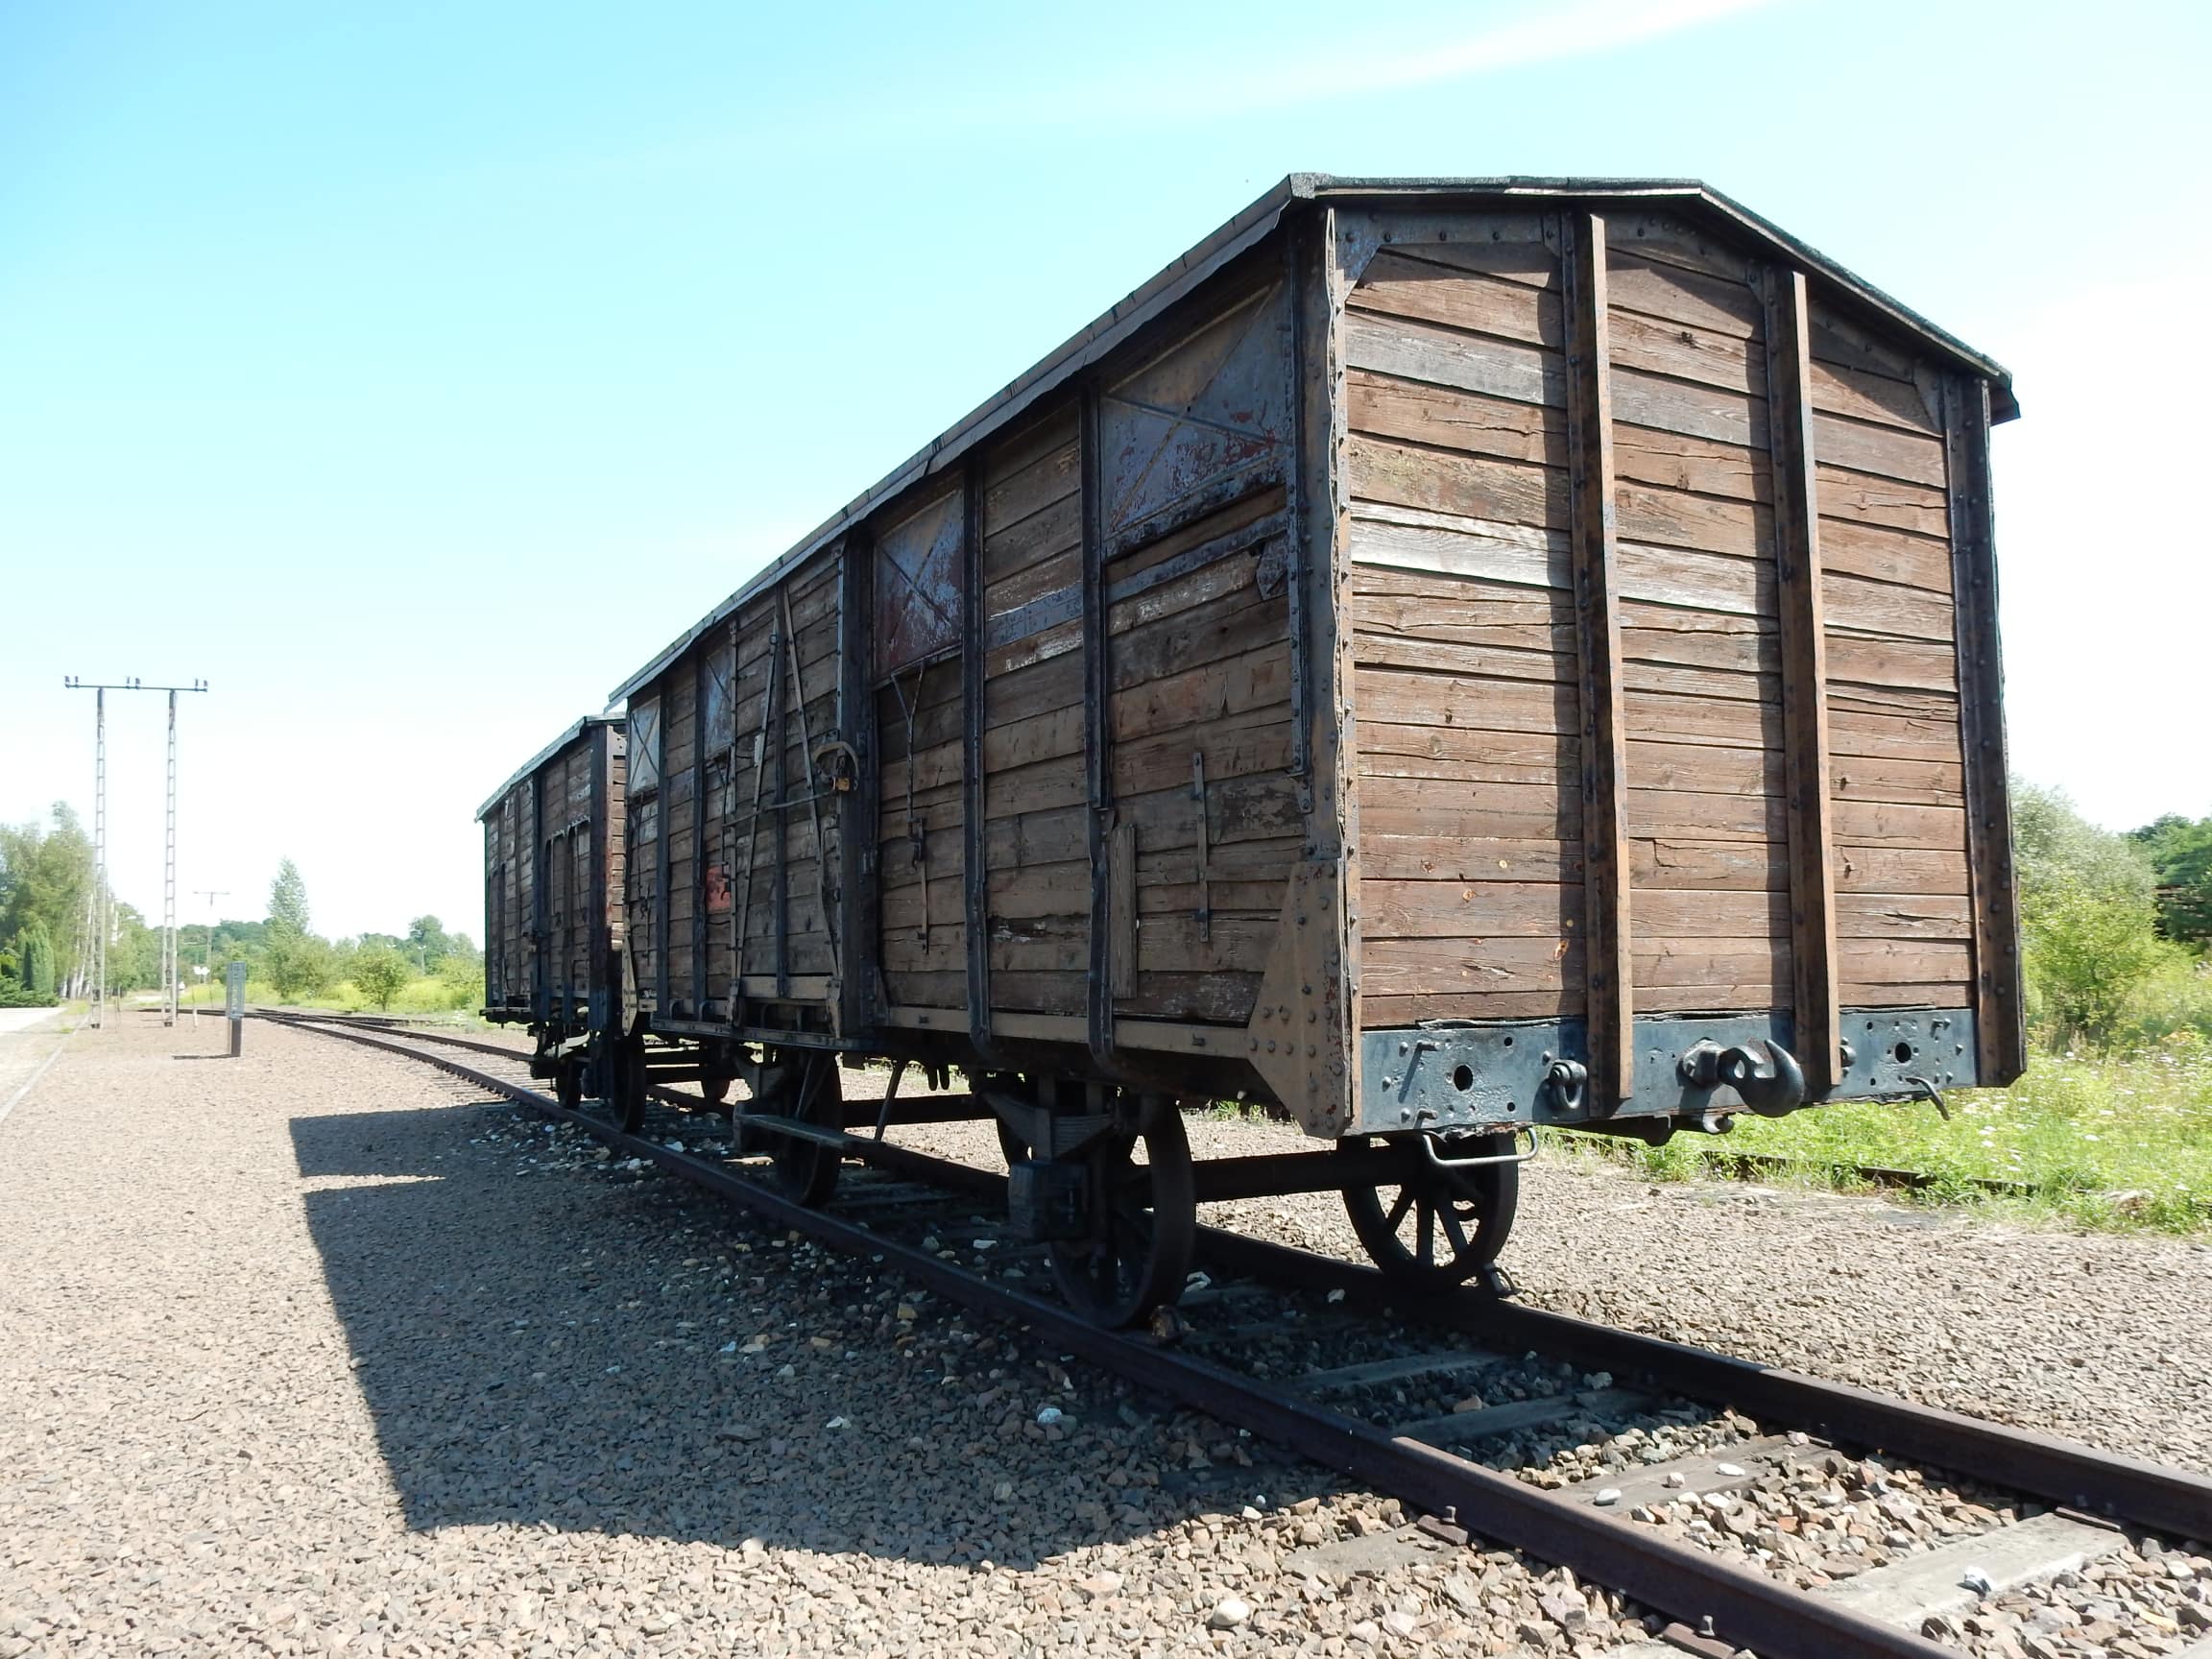 Wagon towarowy w muzeum Auschwitz-Birkenau